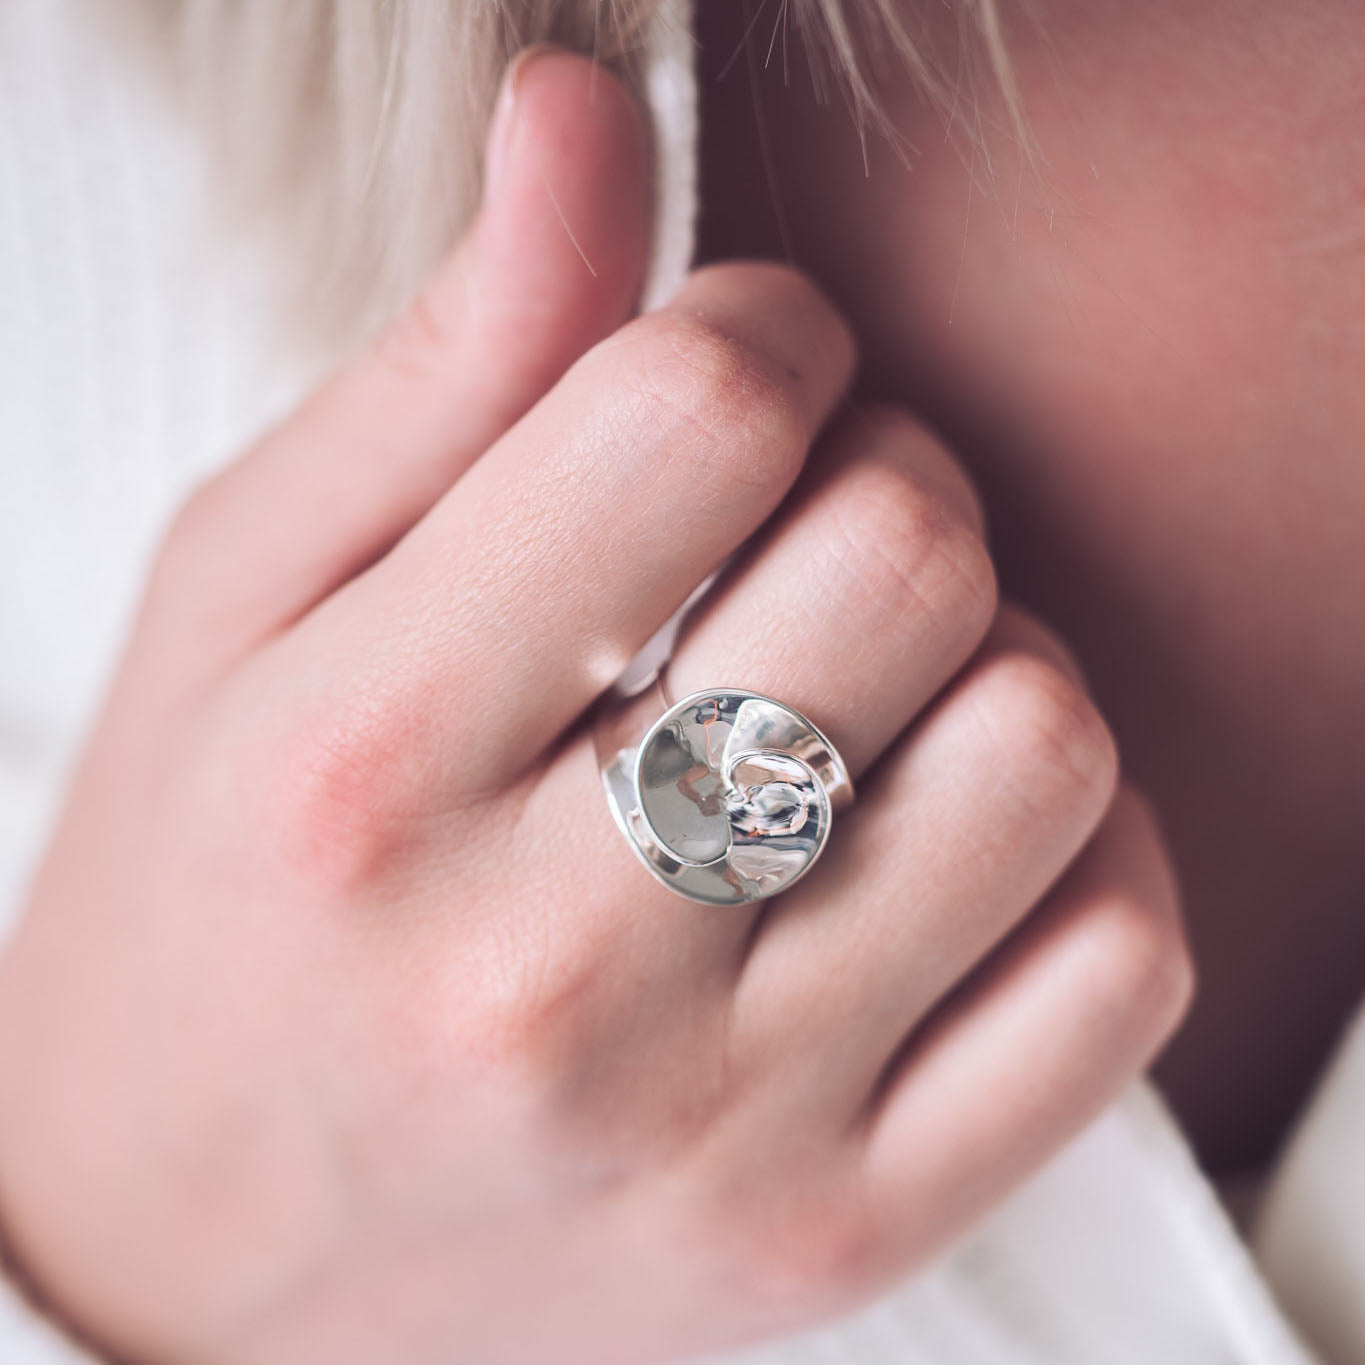 Handmade Silver Rosette Style Ring